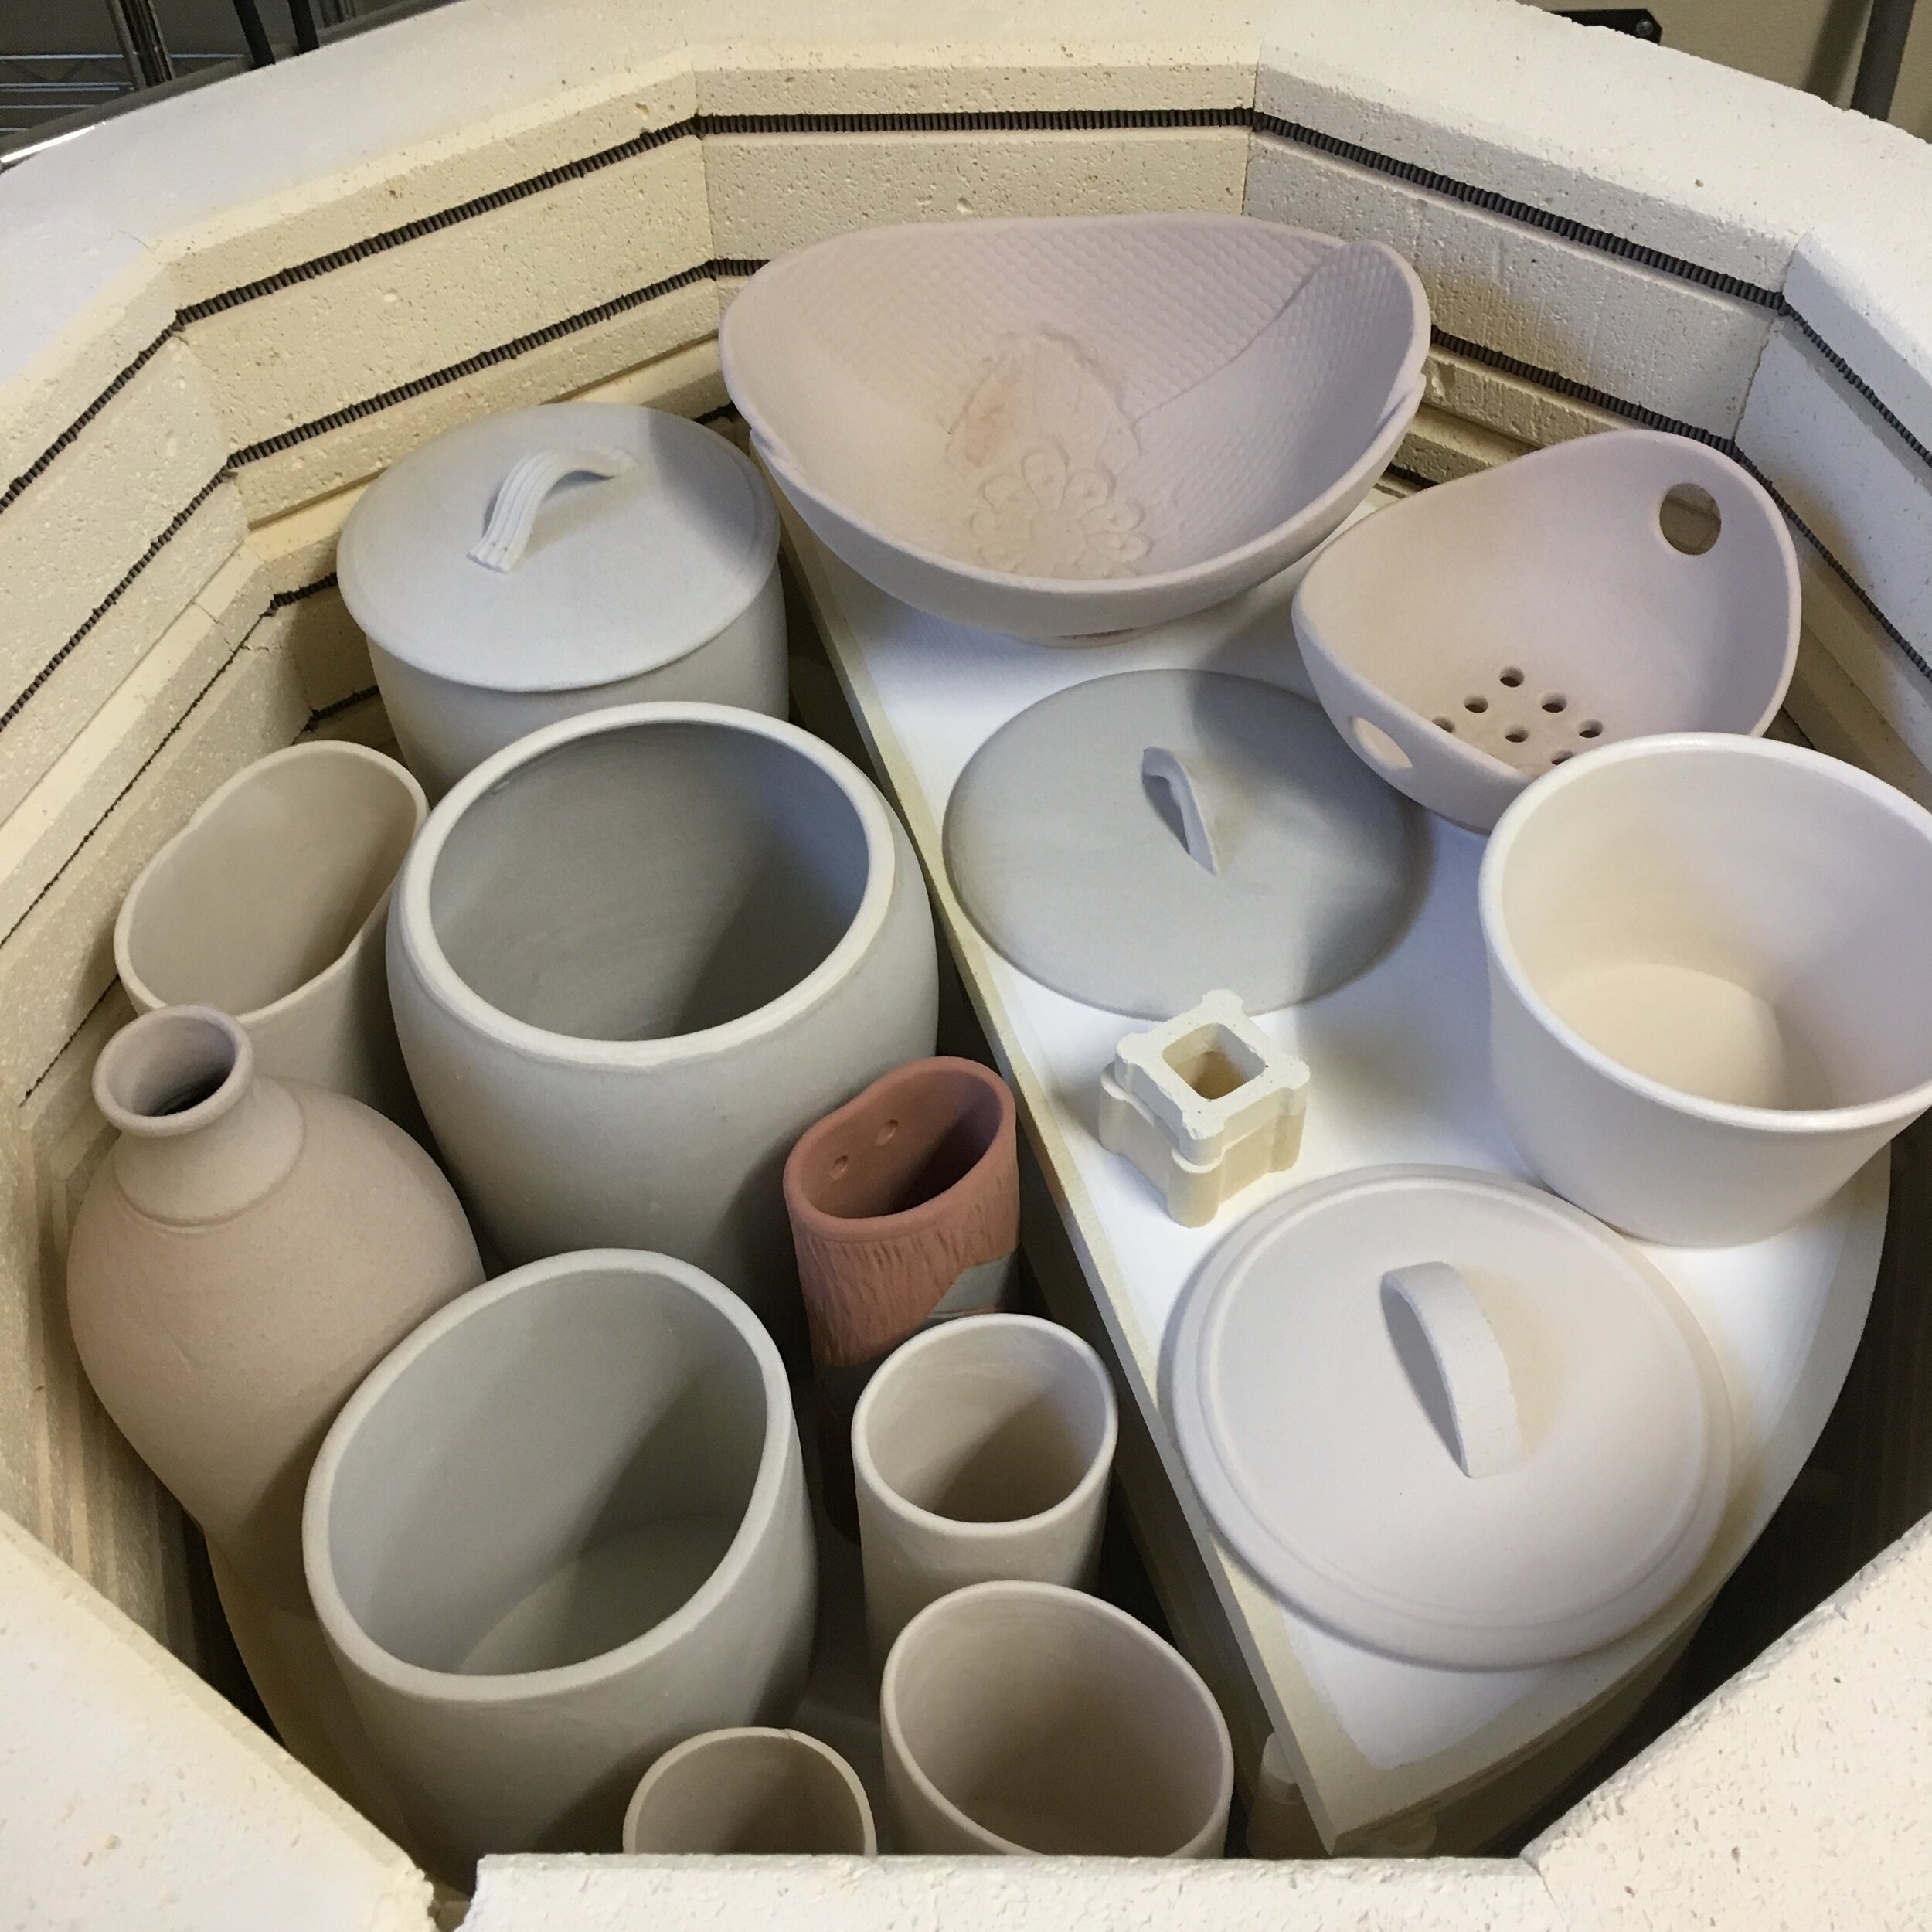 Top shelf in kiln loaded with pots.